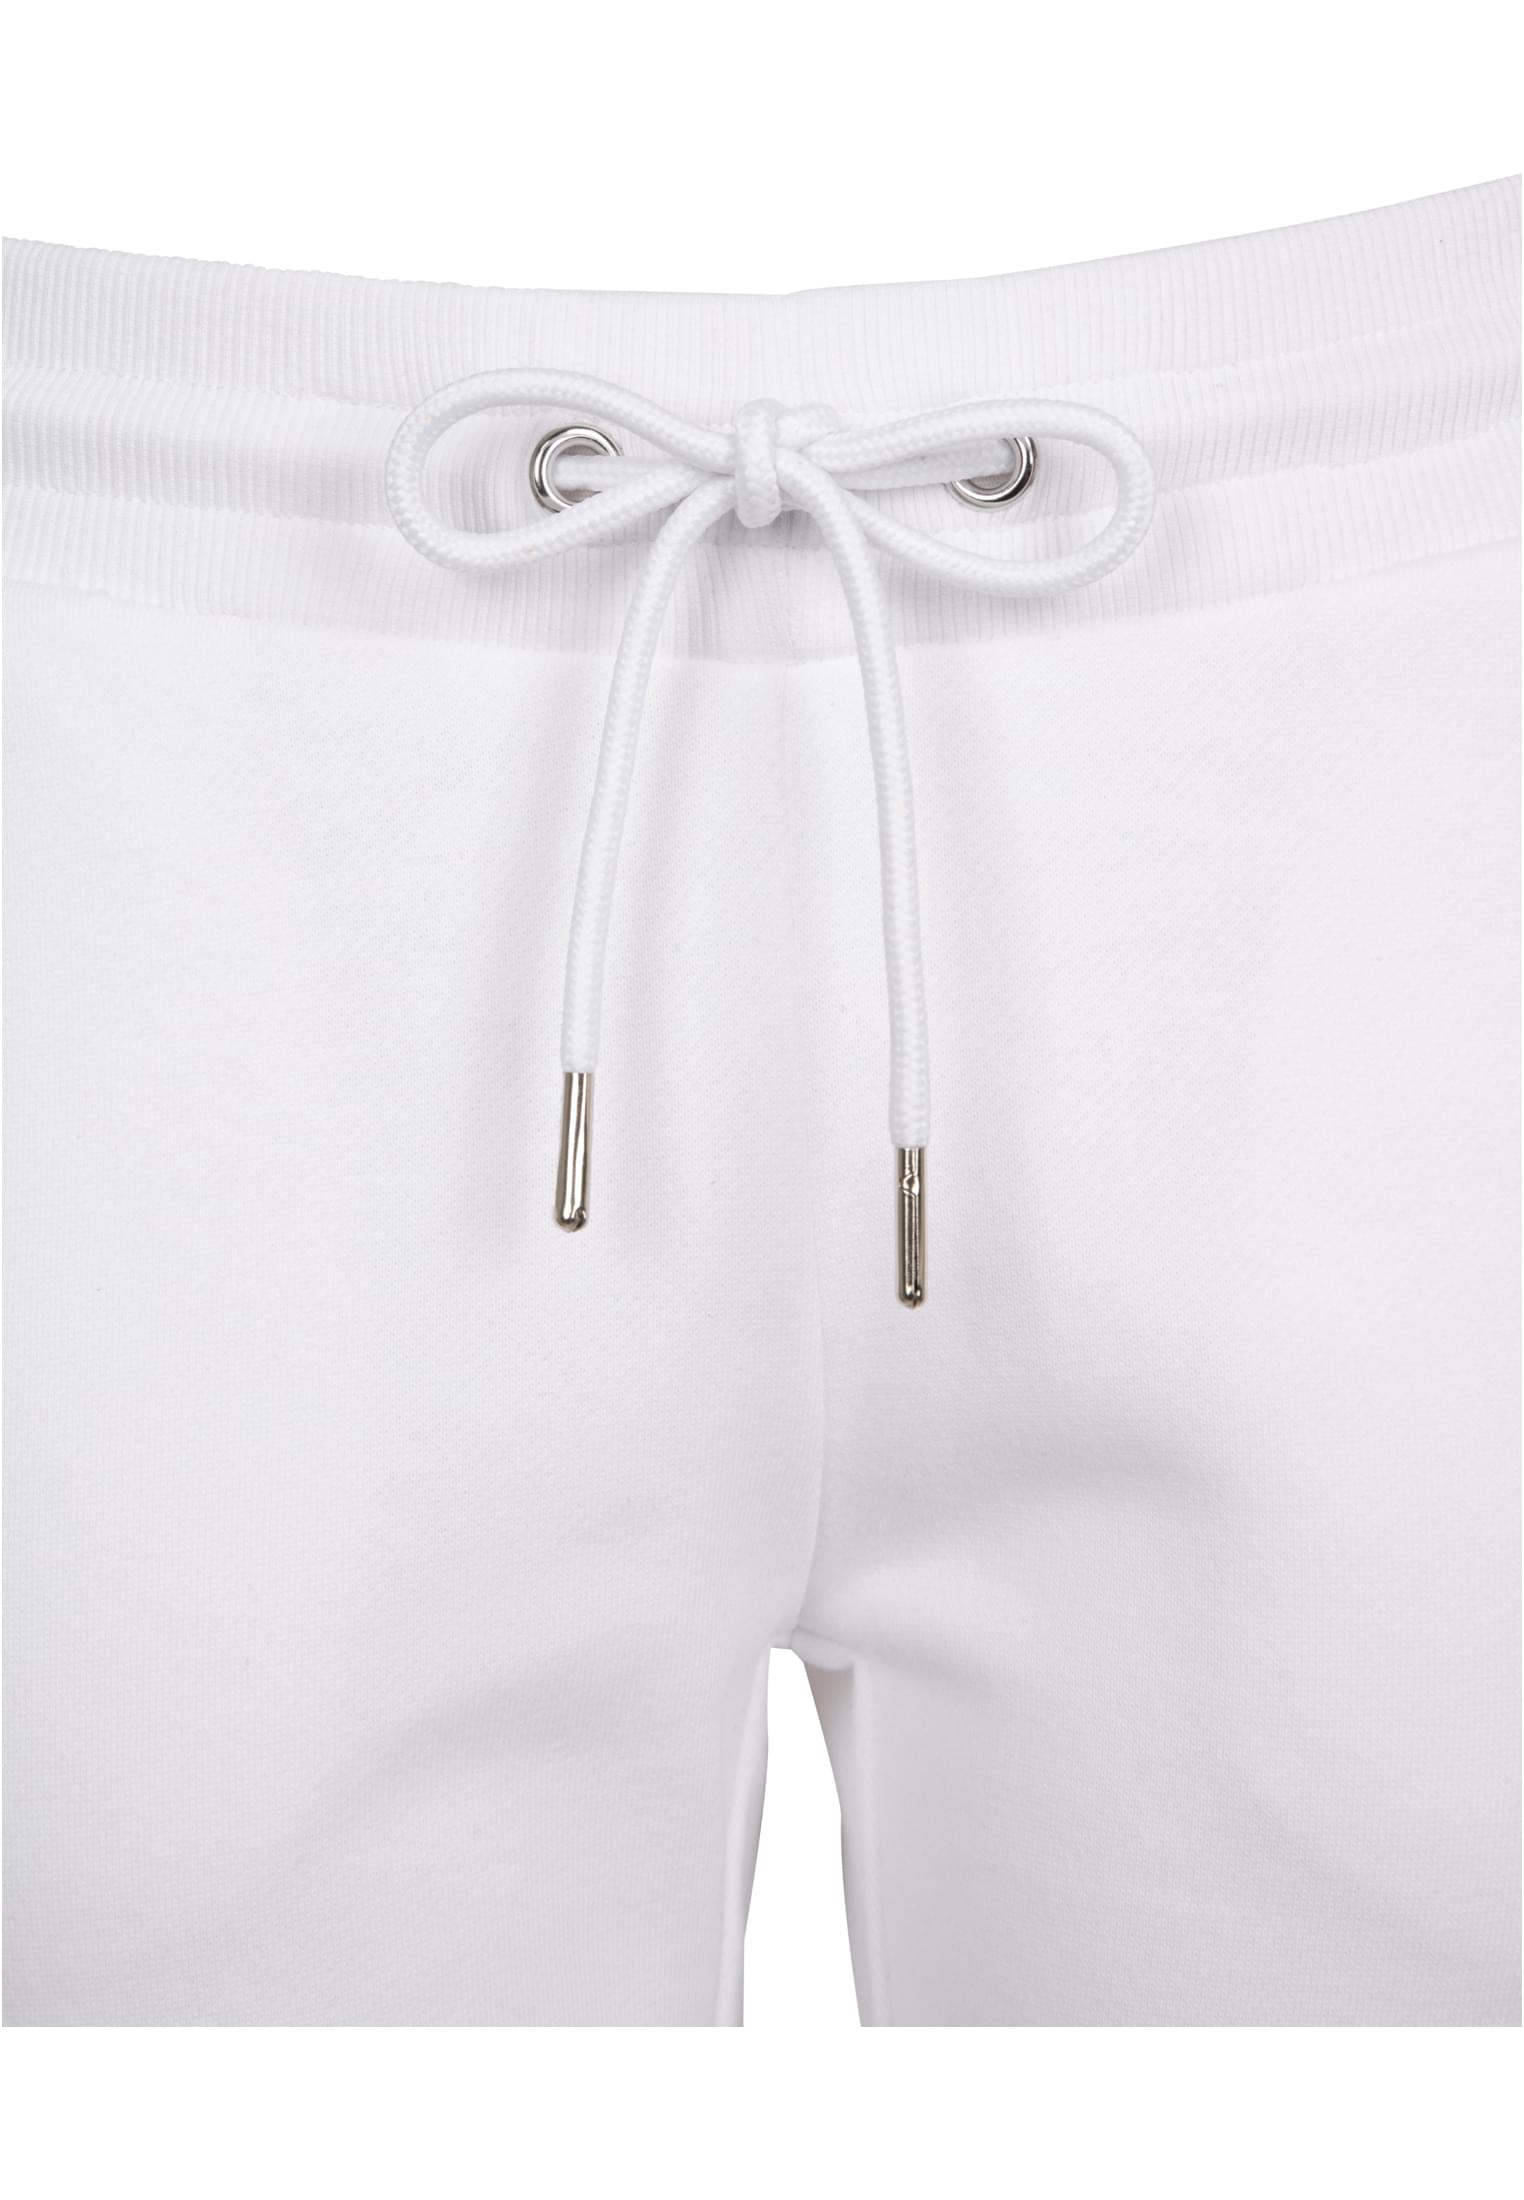 Damen Ladies College Contrast Sweatpants in Farbe white/black/white